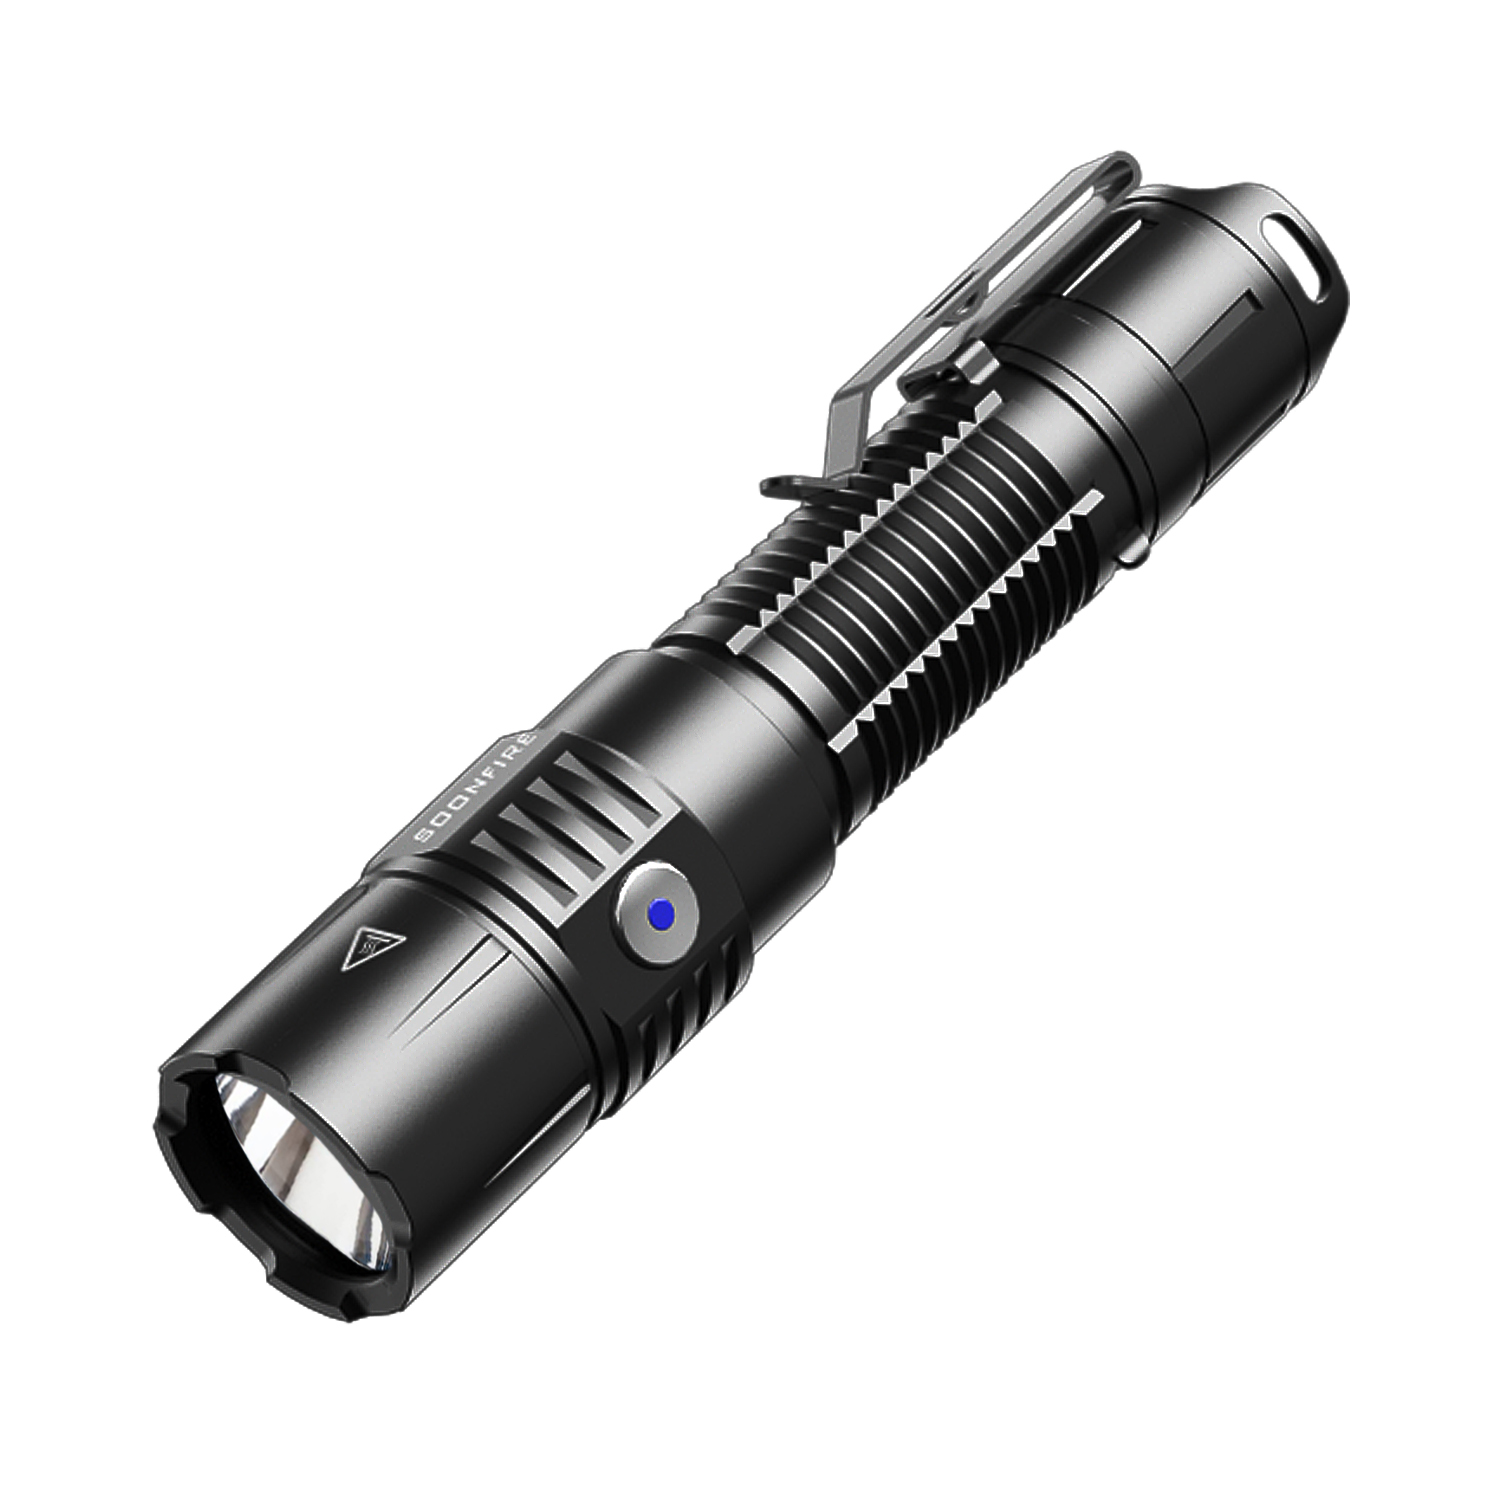 Soonfire MX75 2530 Lumen LED Tactical Flashlight Law Enforcement